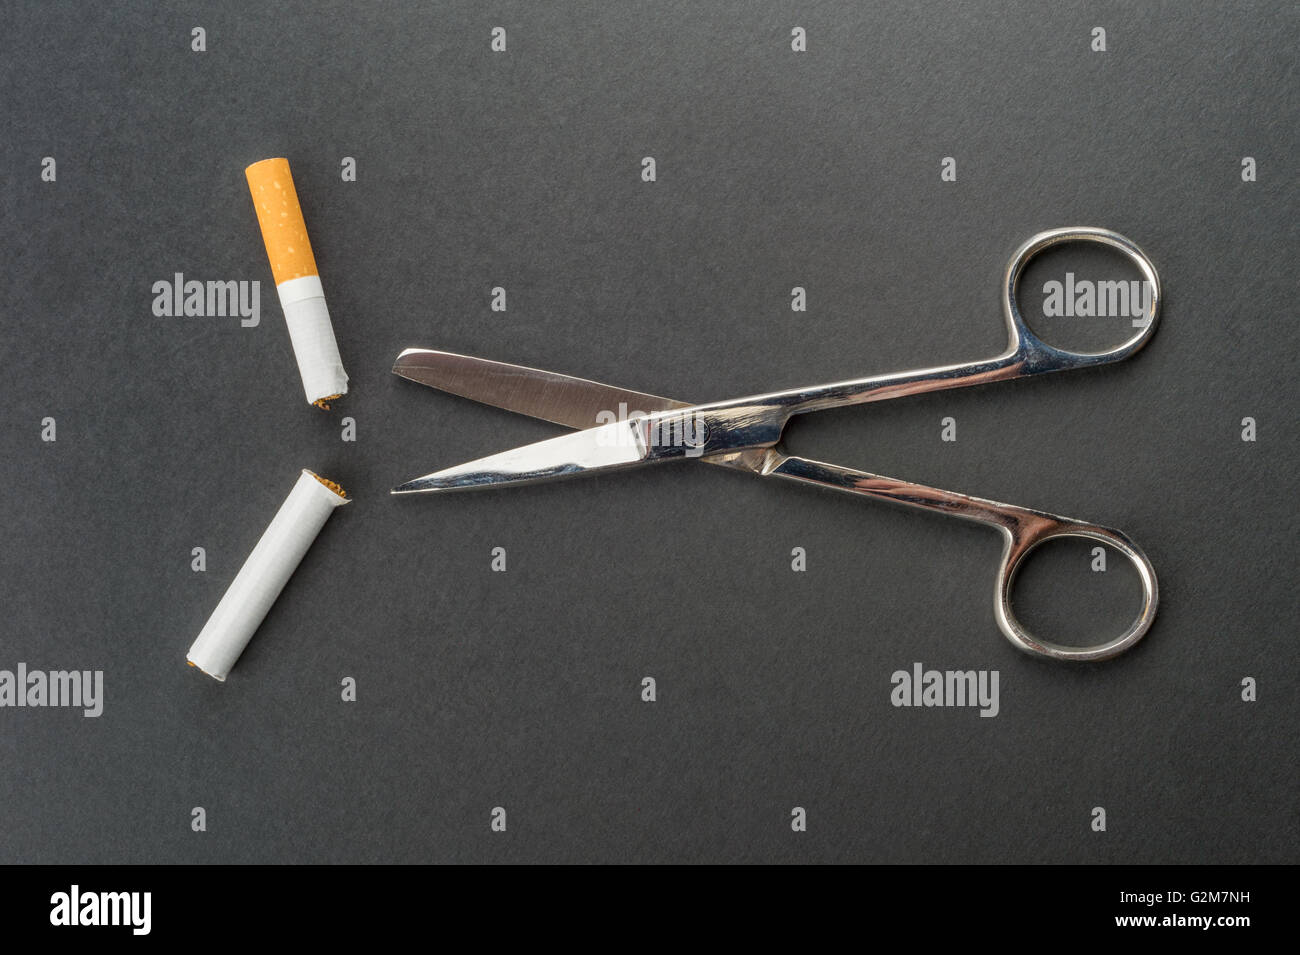 Aufhören zu rauchen - Schere schneidet eine Zigarette in einem dunklen grauen Hintergrund Stockfoto